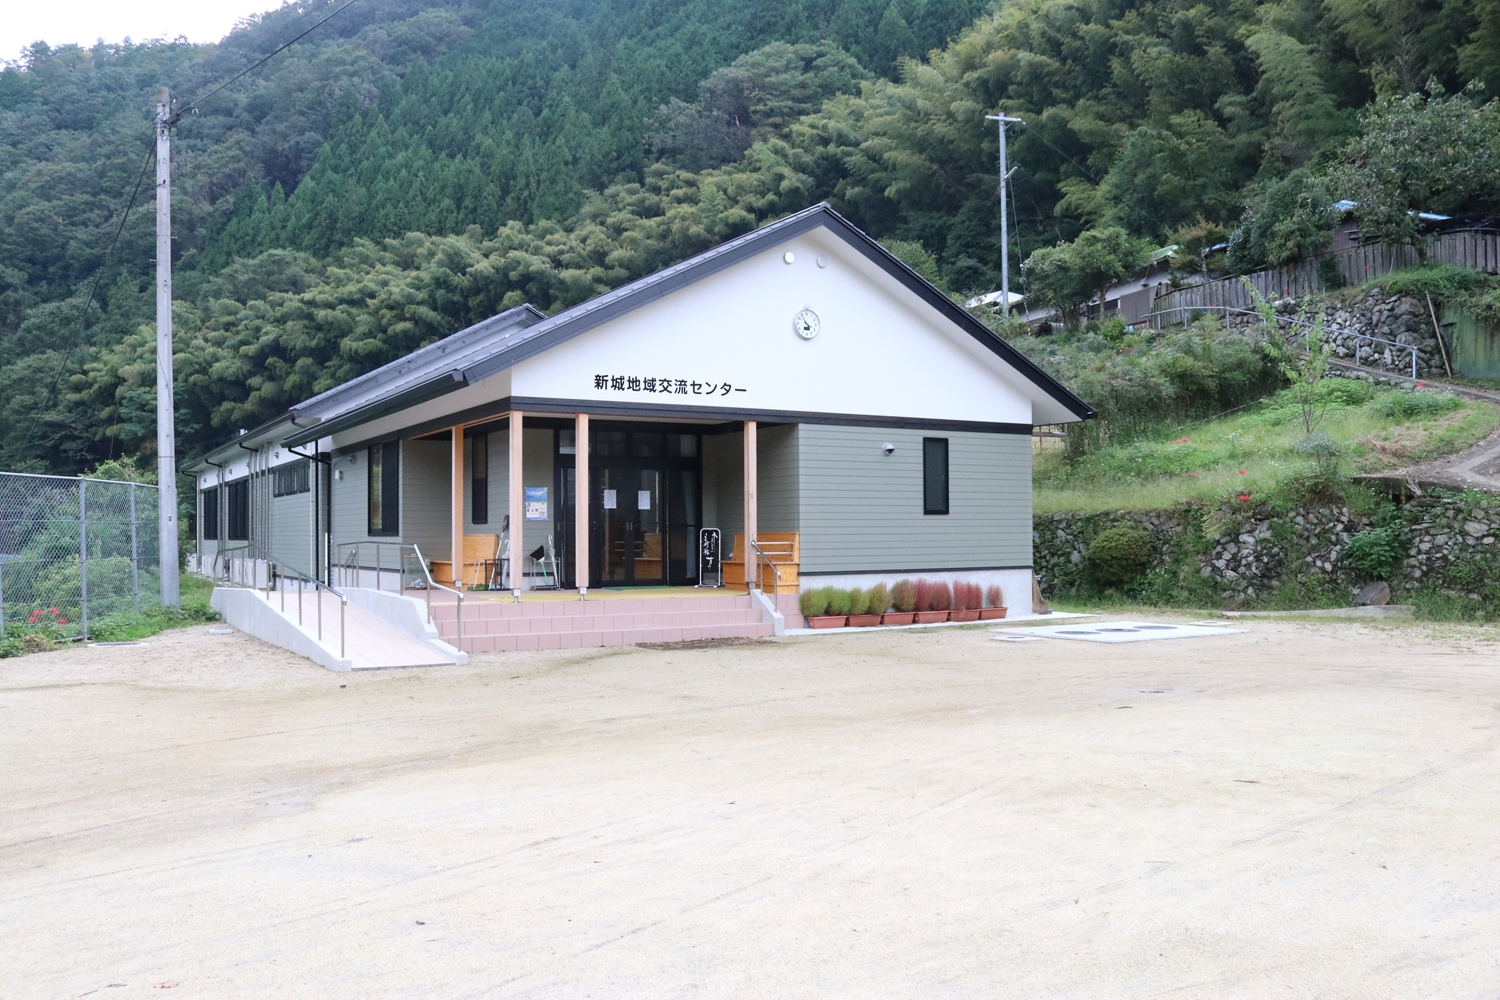 Shinshiro Community Center Mizu to Midori Art Museum Suginoko